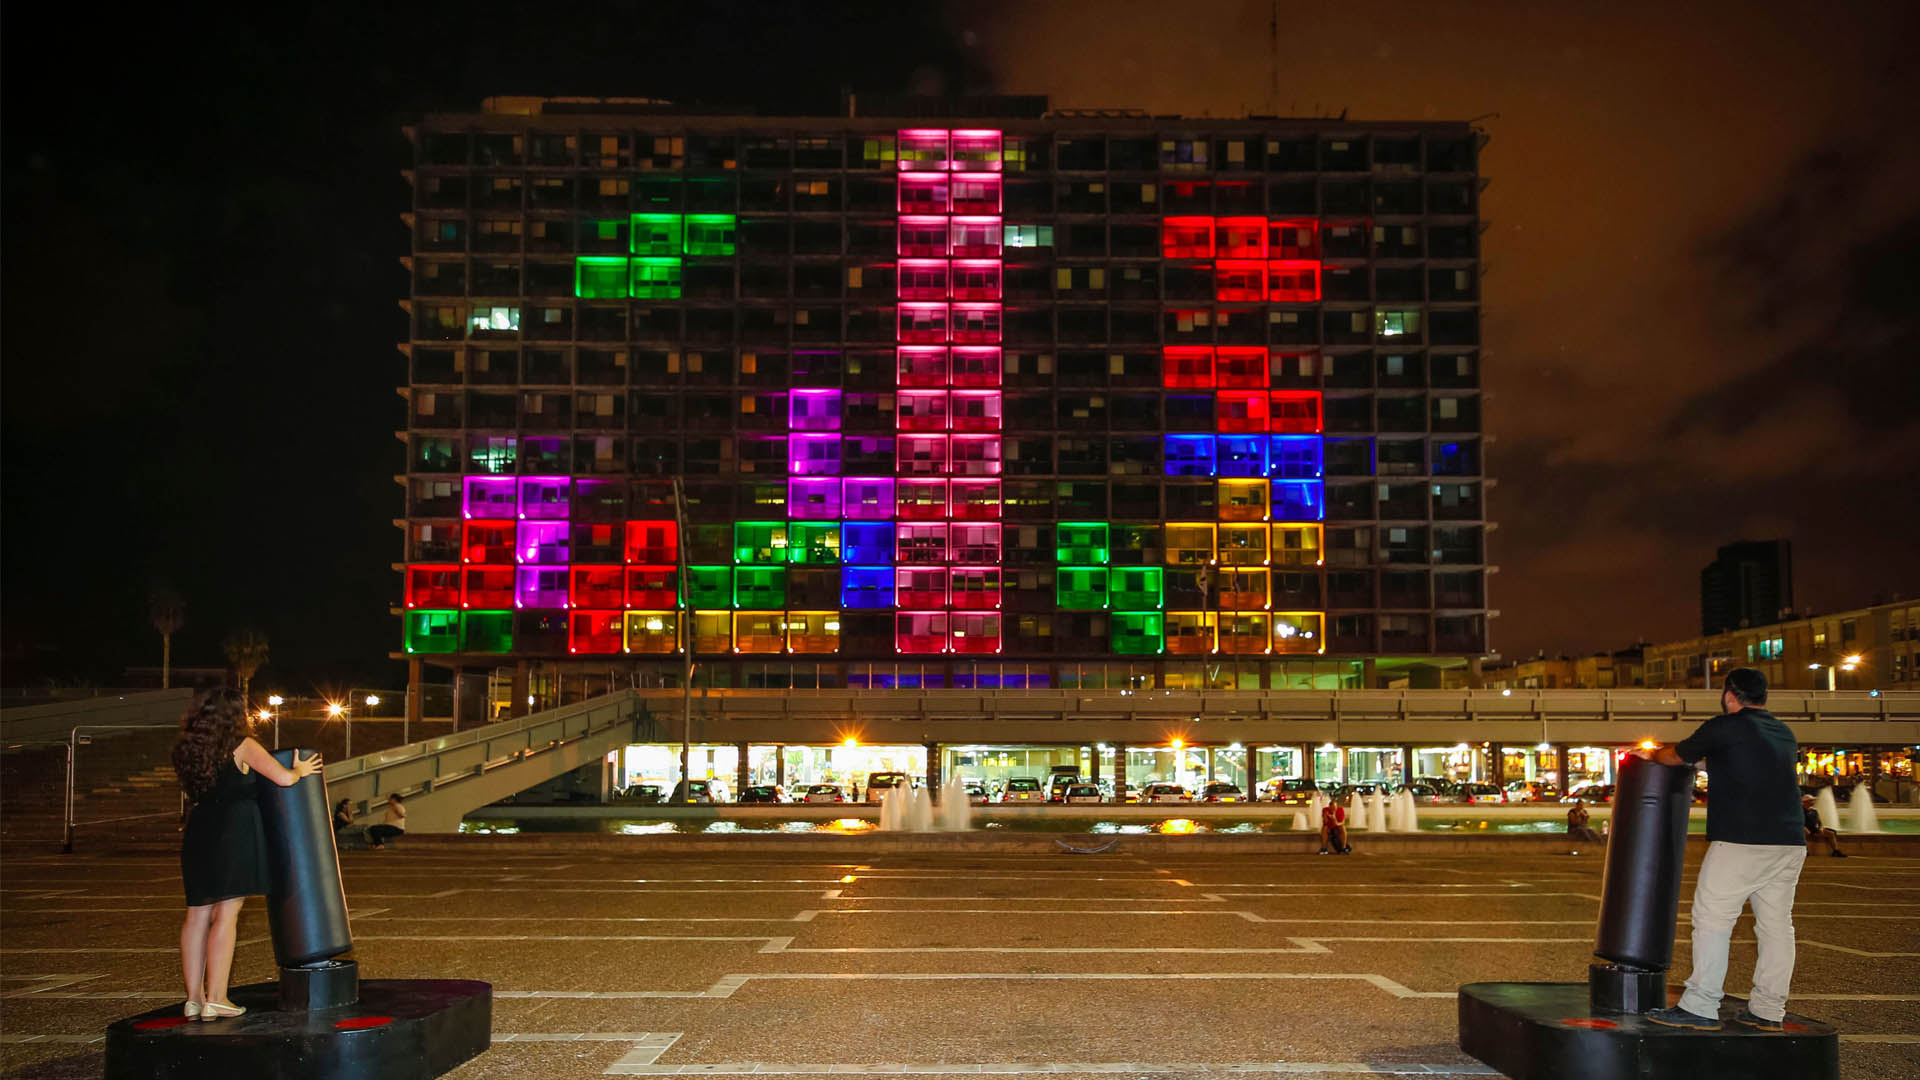 El gobierno de Tel Aviv ha instalado una mega pantalla LED en el Ayuntamiento y joysticks gigantes en la plaza contigua